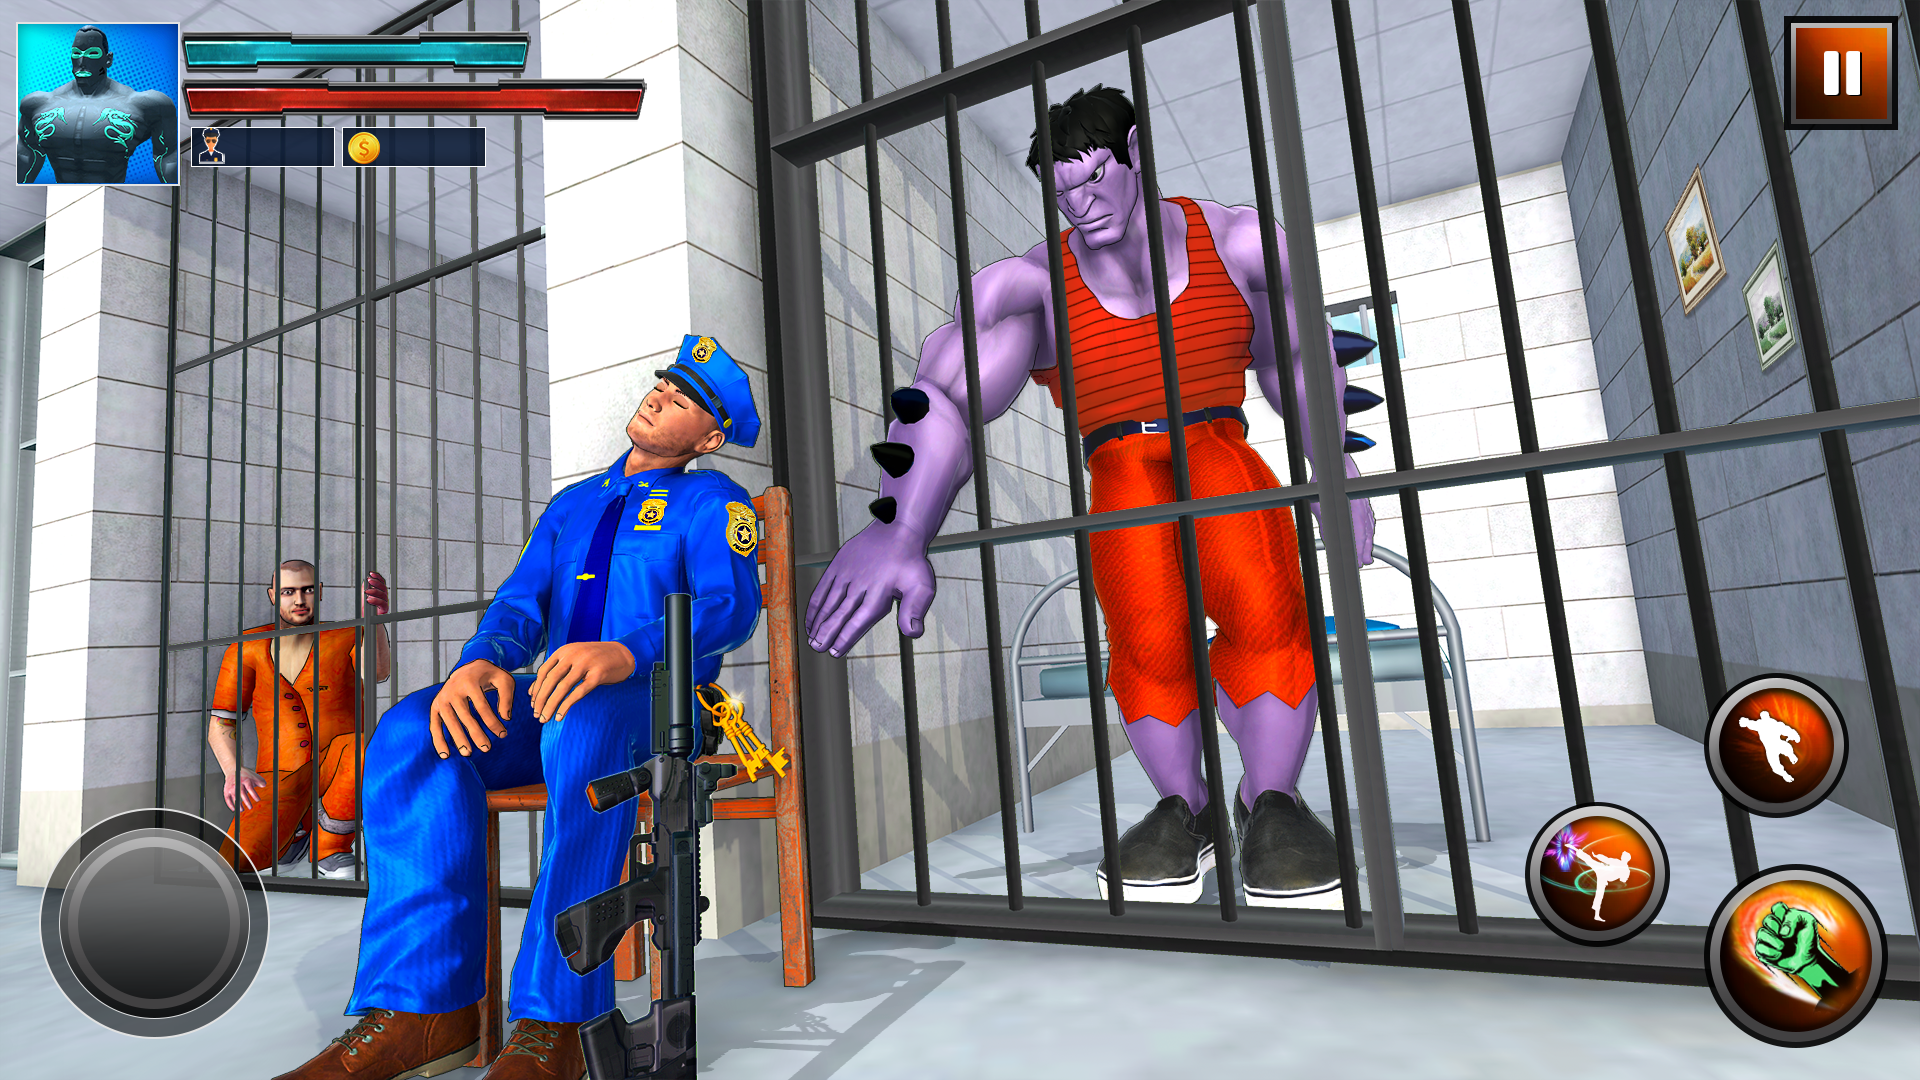 Screenshot 1 of ग्रैंड जेल ब्रेक मॉन्स्टर एस्केप 2.0